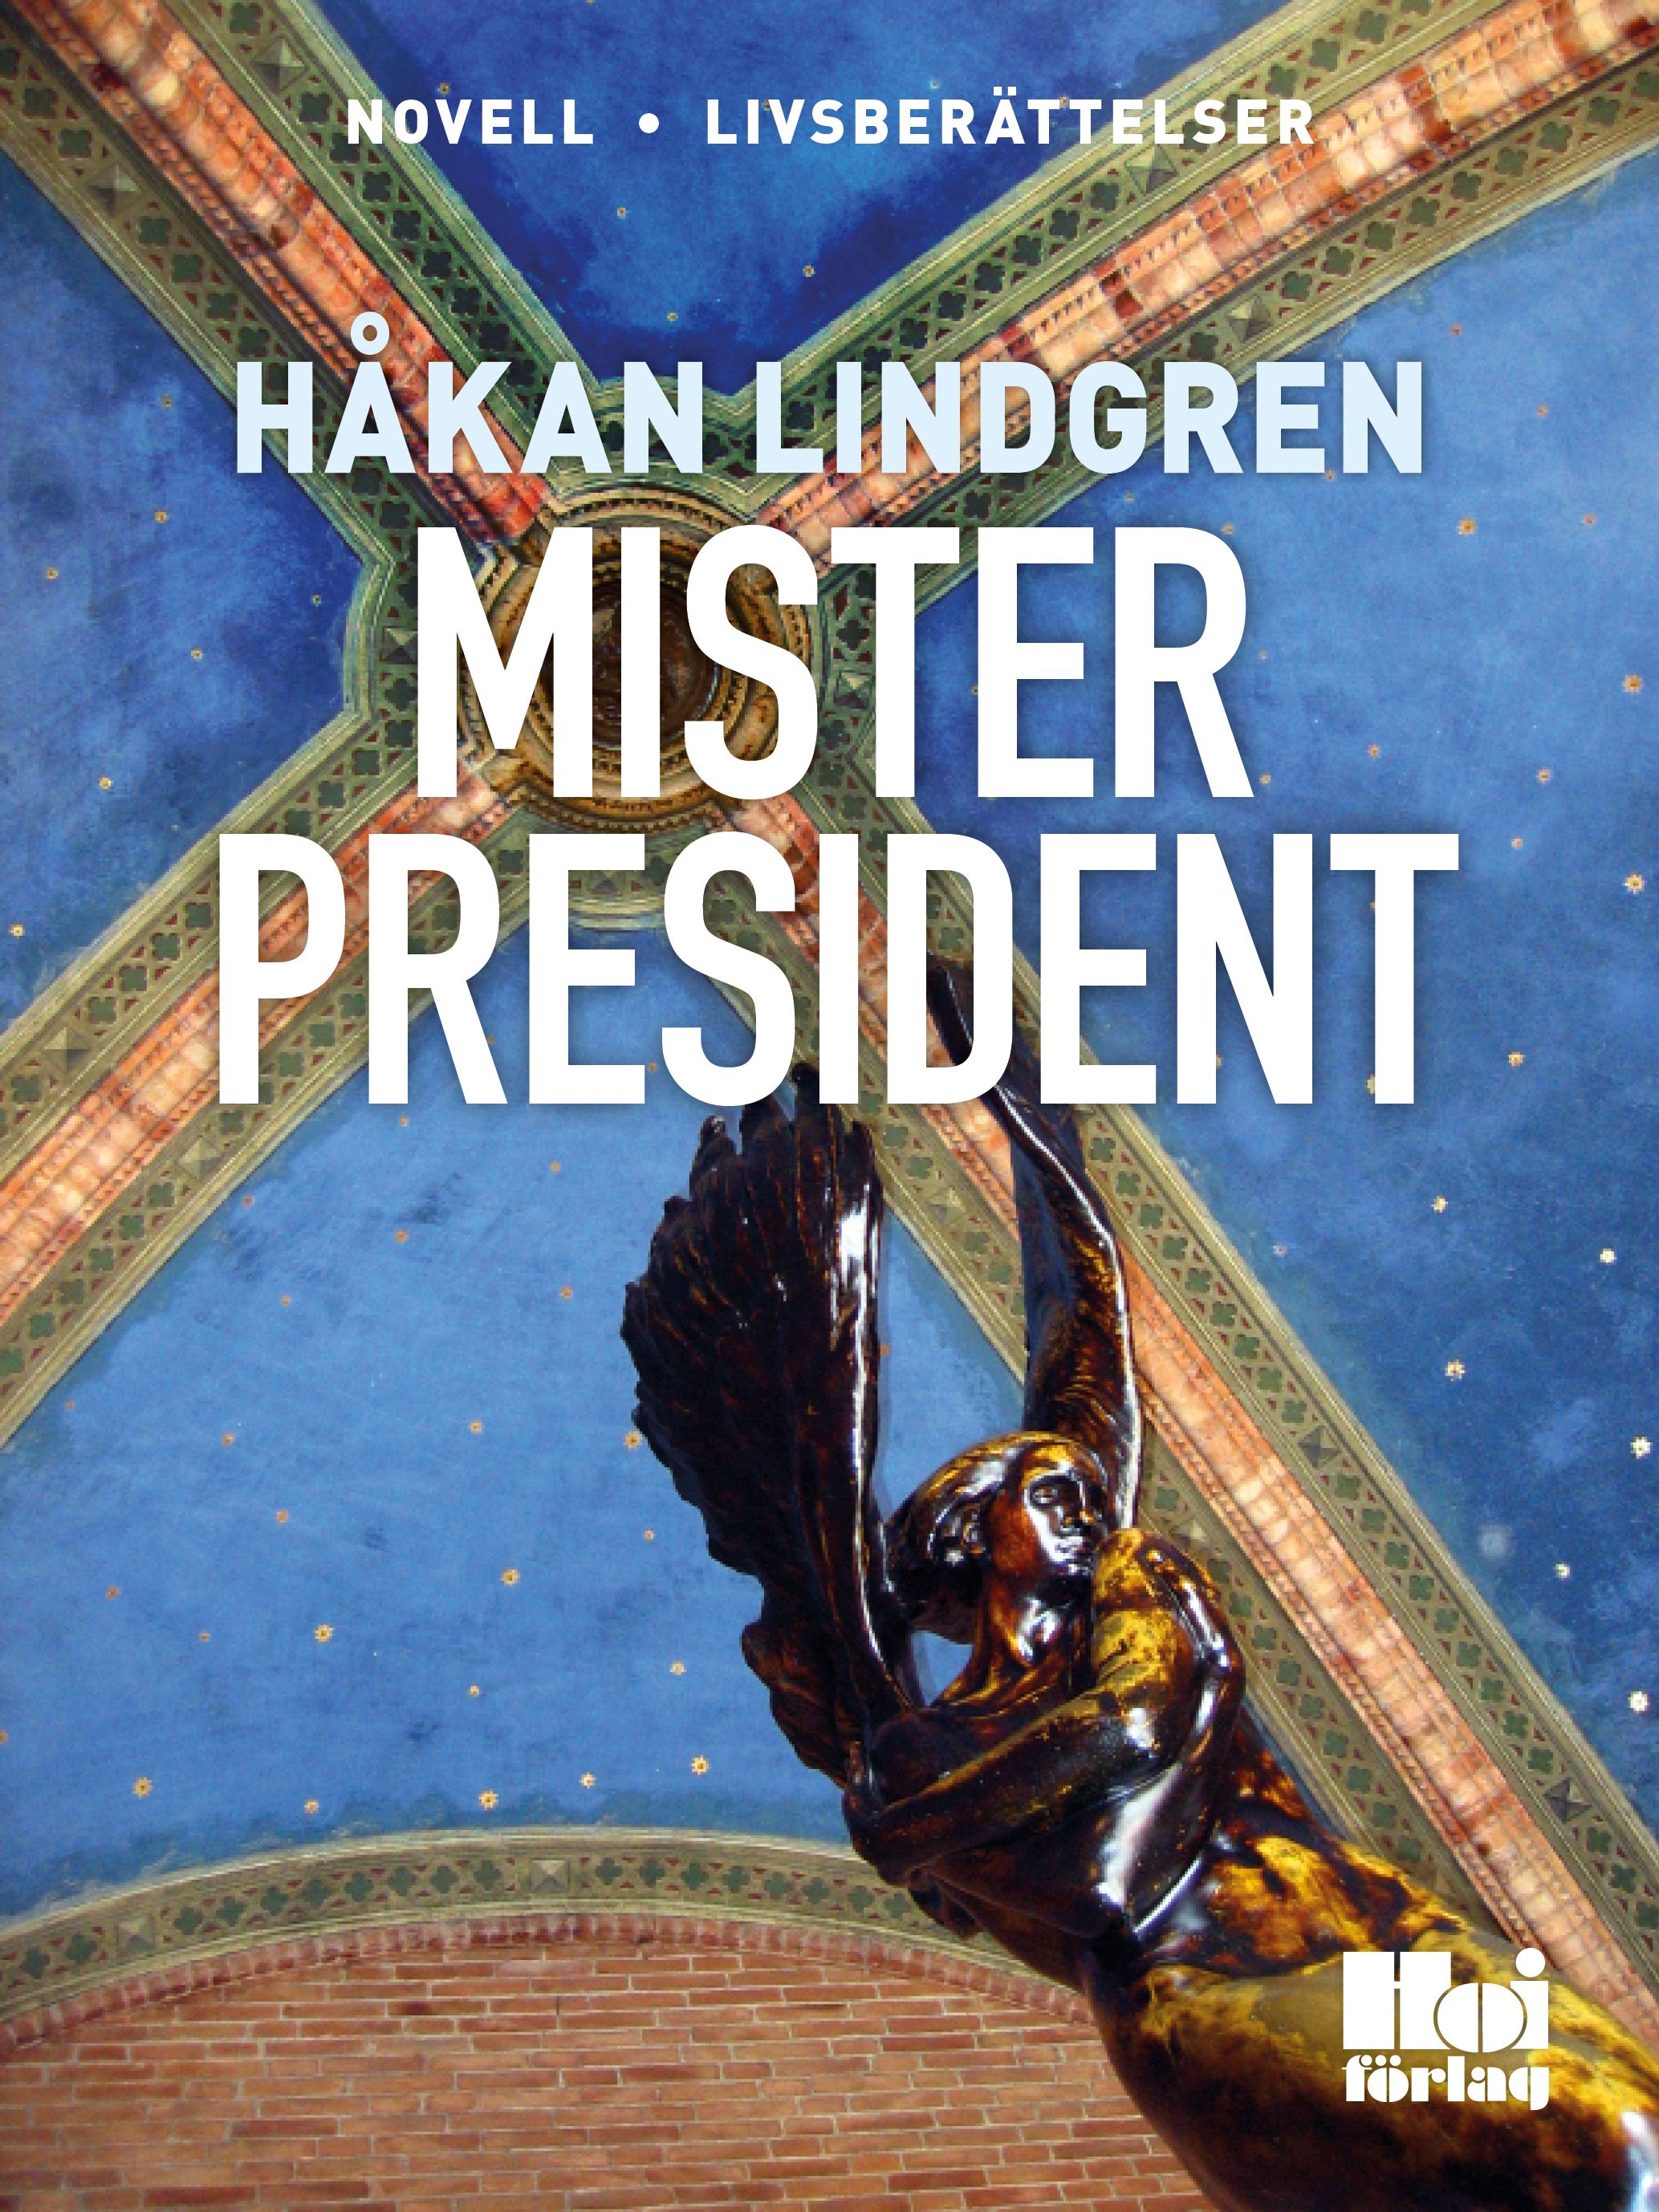 Mister President, eBook by Håkan Lindgren